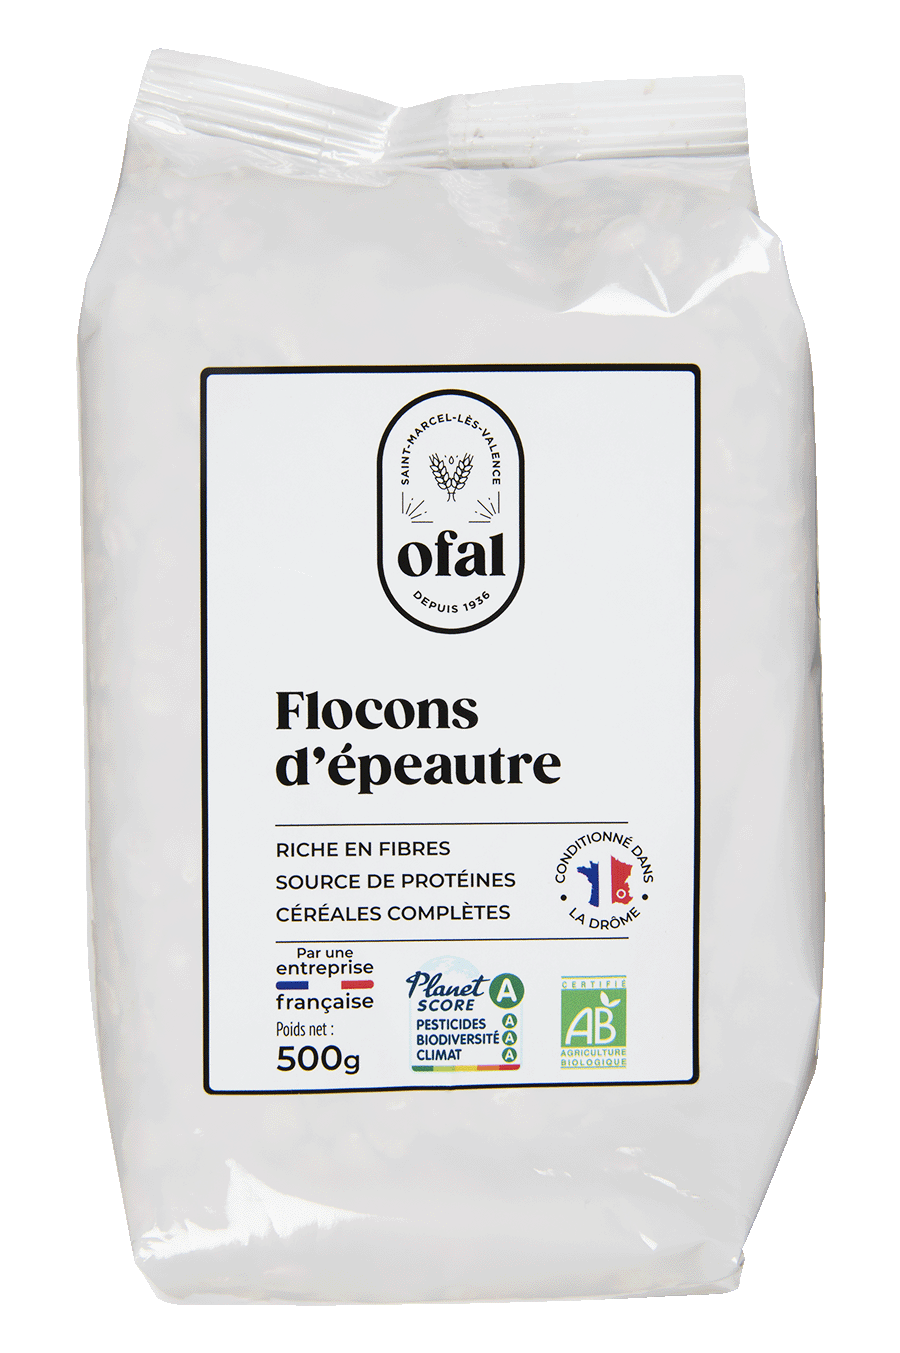 Flocons d'avoine gros - Bio - Vrac - Origine France - FLOAV7K